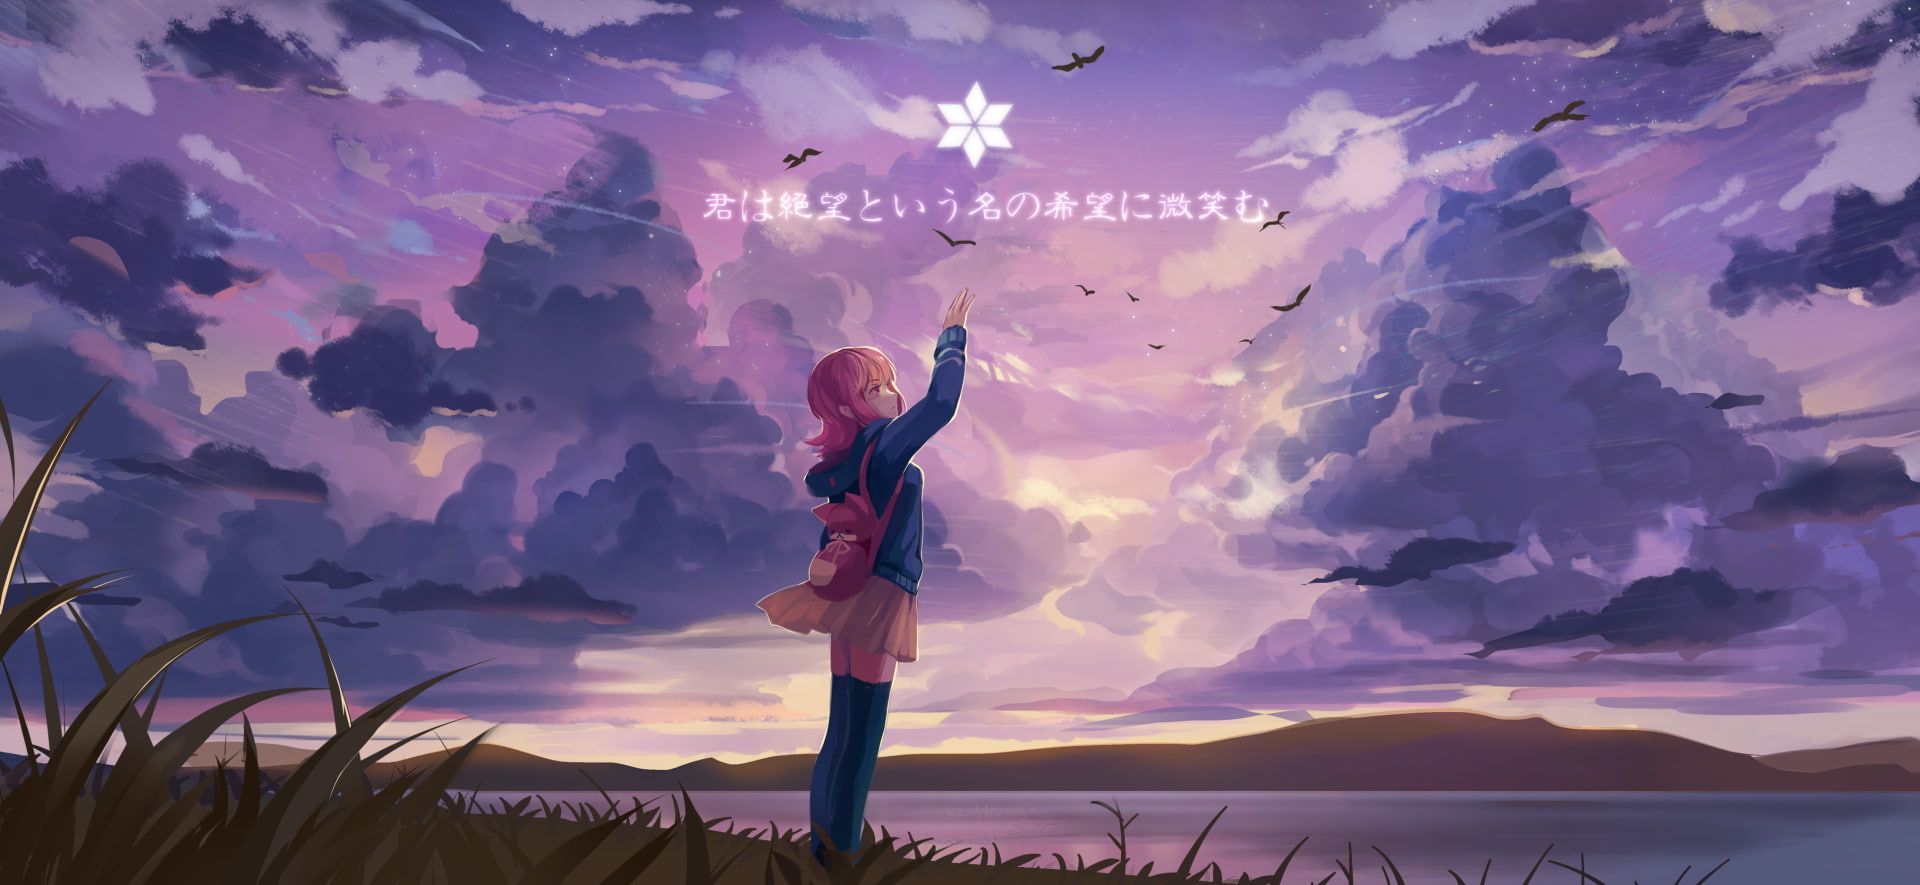 Danganronpa Danganronpa 2: Goodbye Despair #Anime Chiaki Nanami